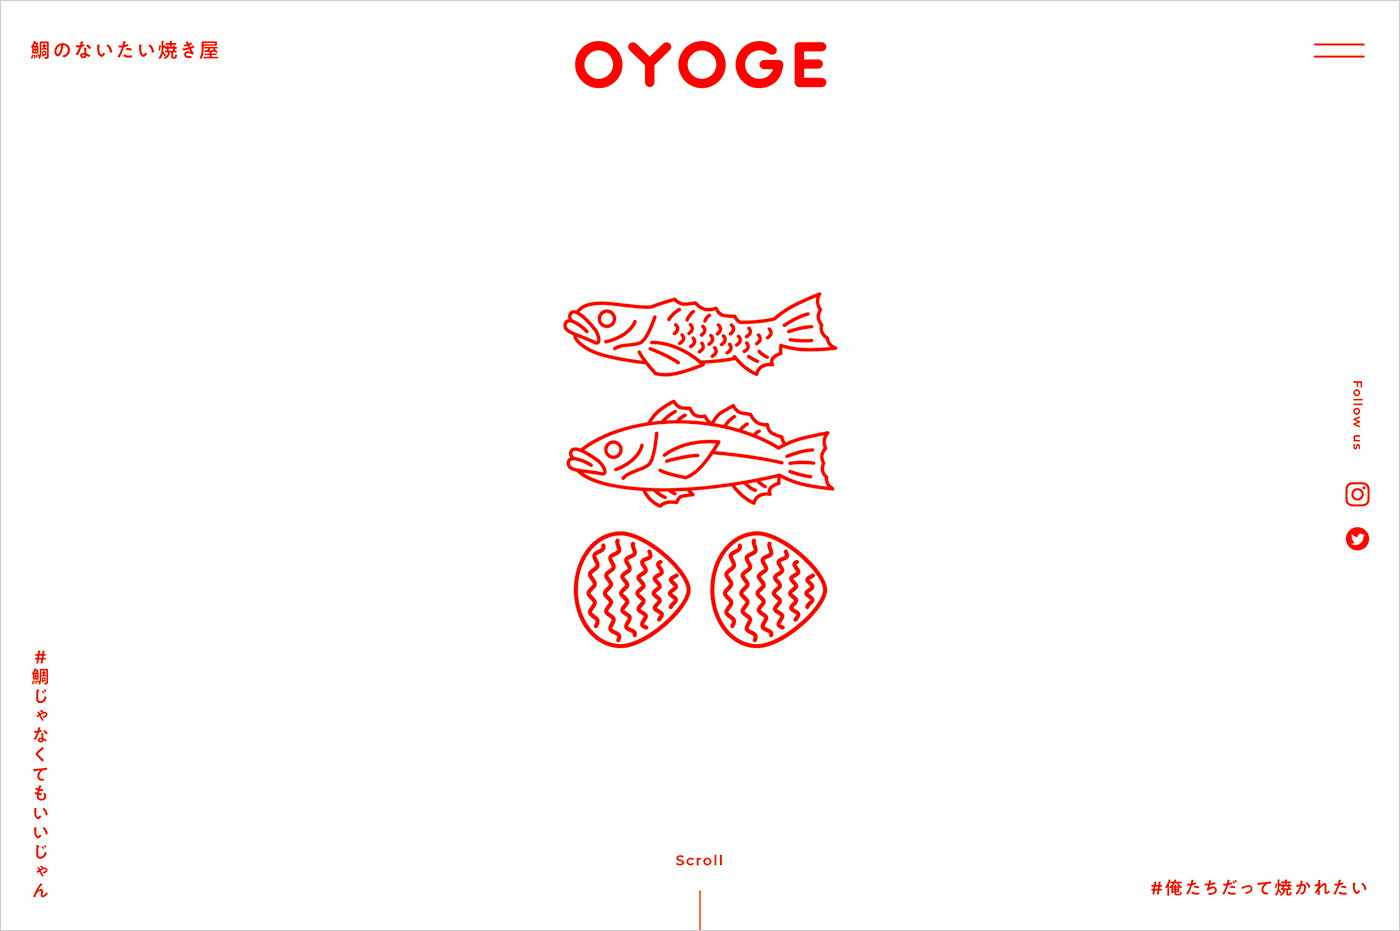 鯛のないたい焼き屋 OYOGEウェブサイトの画面キャプチャ画像